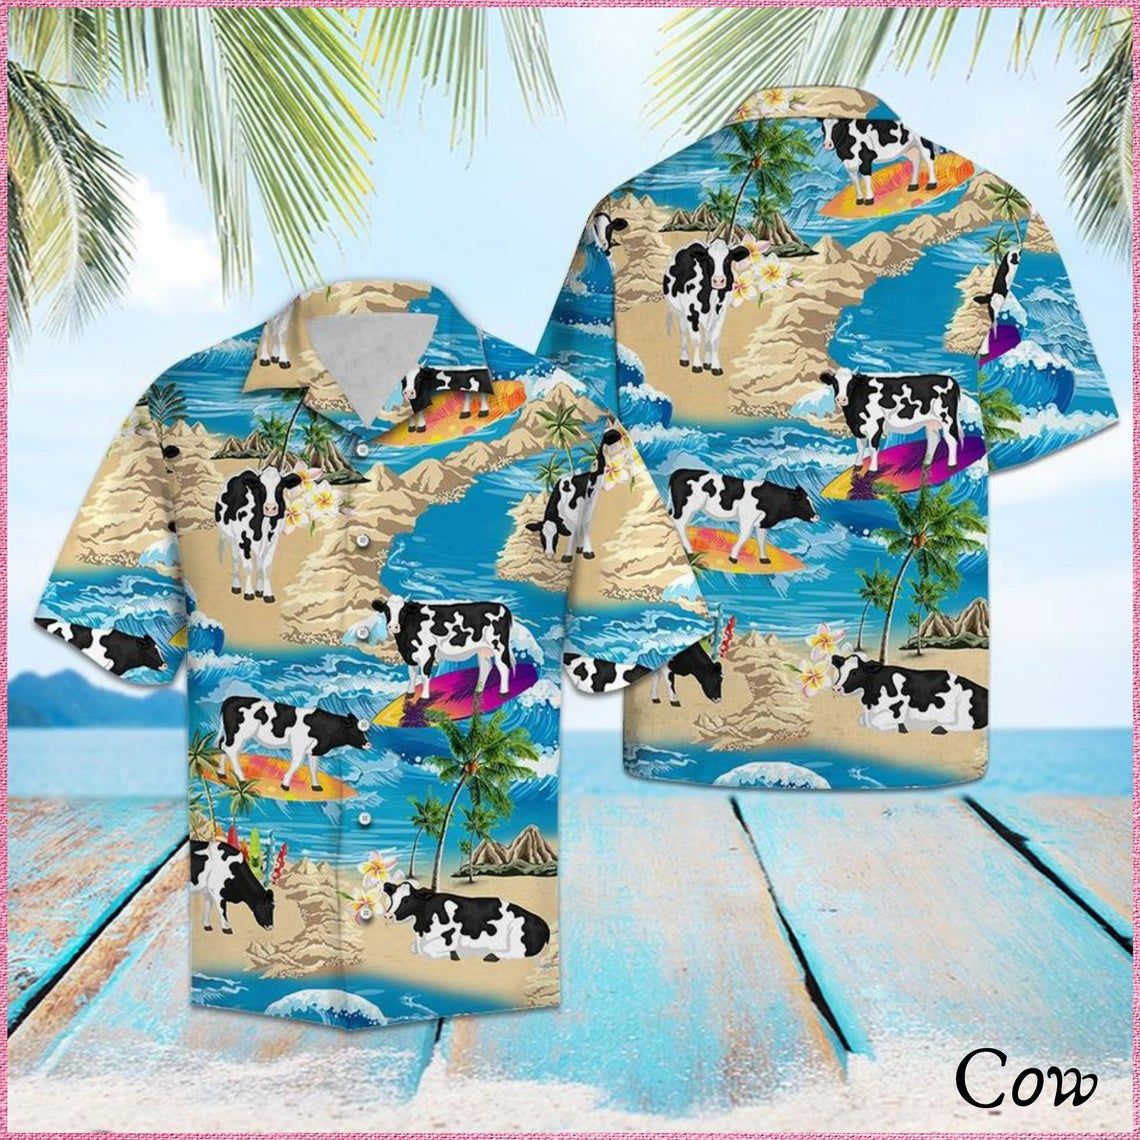 Cow Summer Vacation Hawaii Shirt Style: Short Sleeve Hawaiian Shirt, Color: Blue